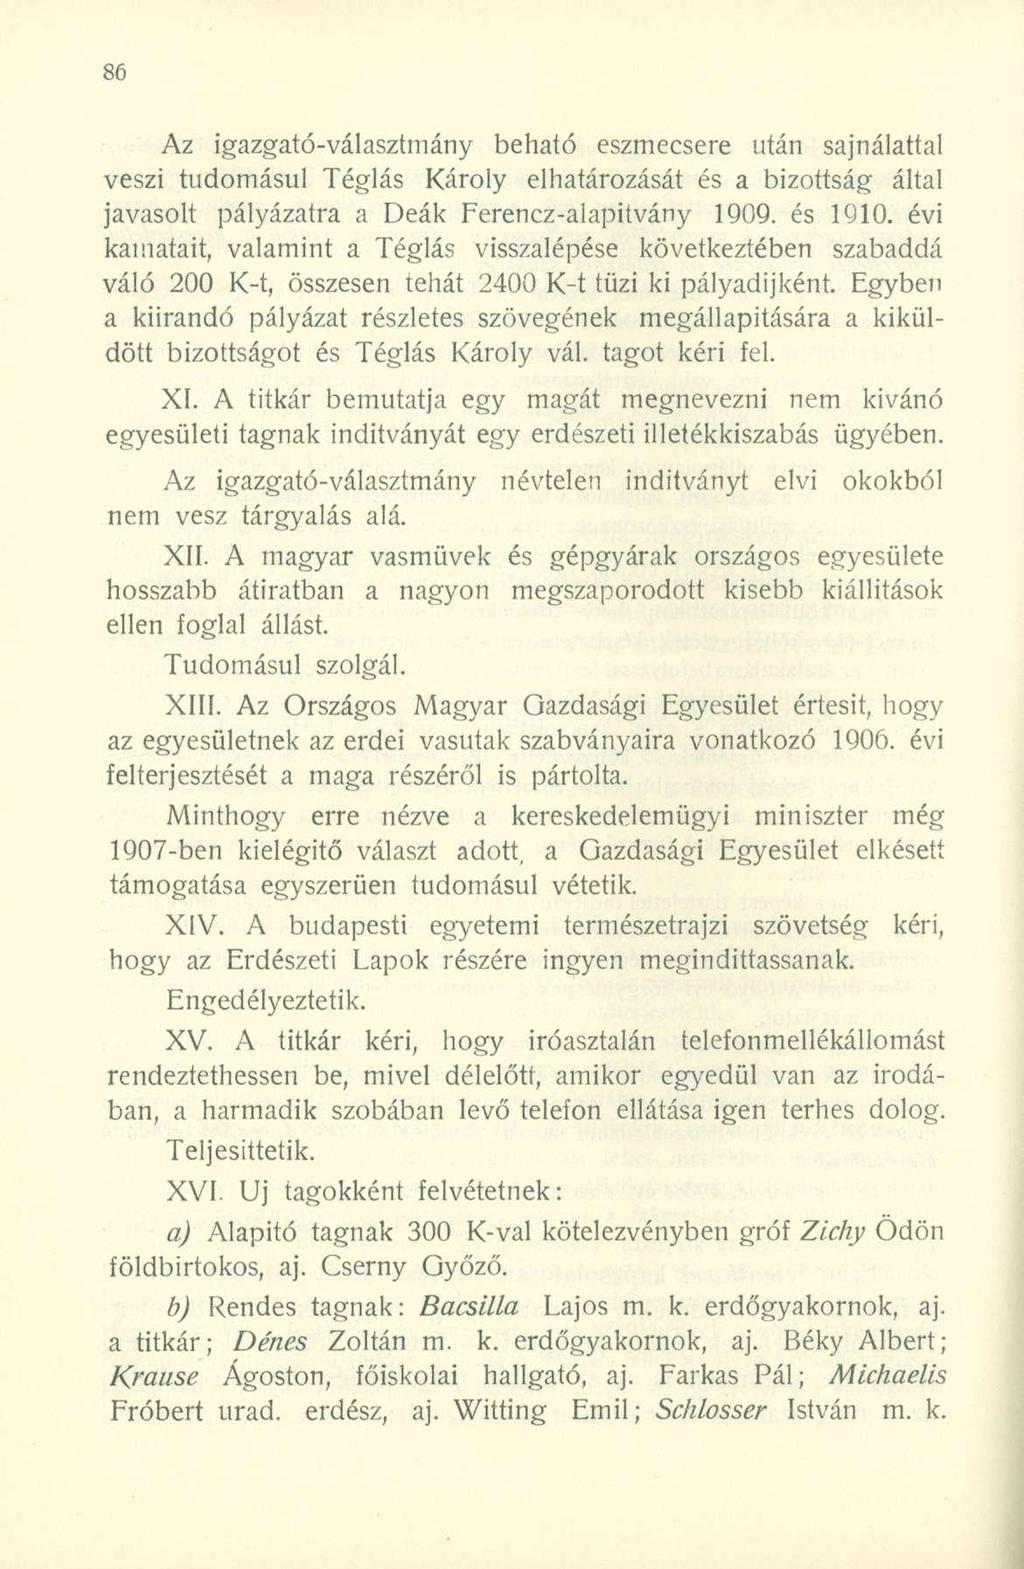 Az igazgató-választmány beható eszmecsere után sajnálattal veszi tudomásul Téglás Károly elhatározását és a bizottság által javasolt pályázatra a Deák Ferencz-alapitvány 1909. és 1910.